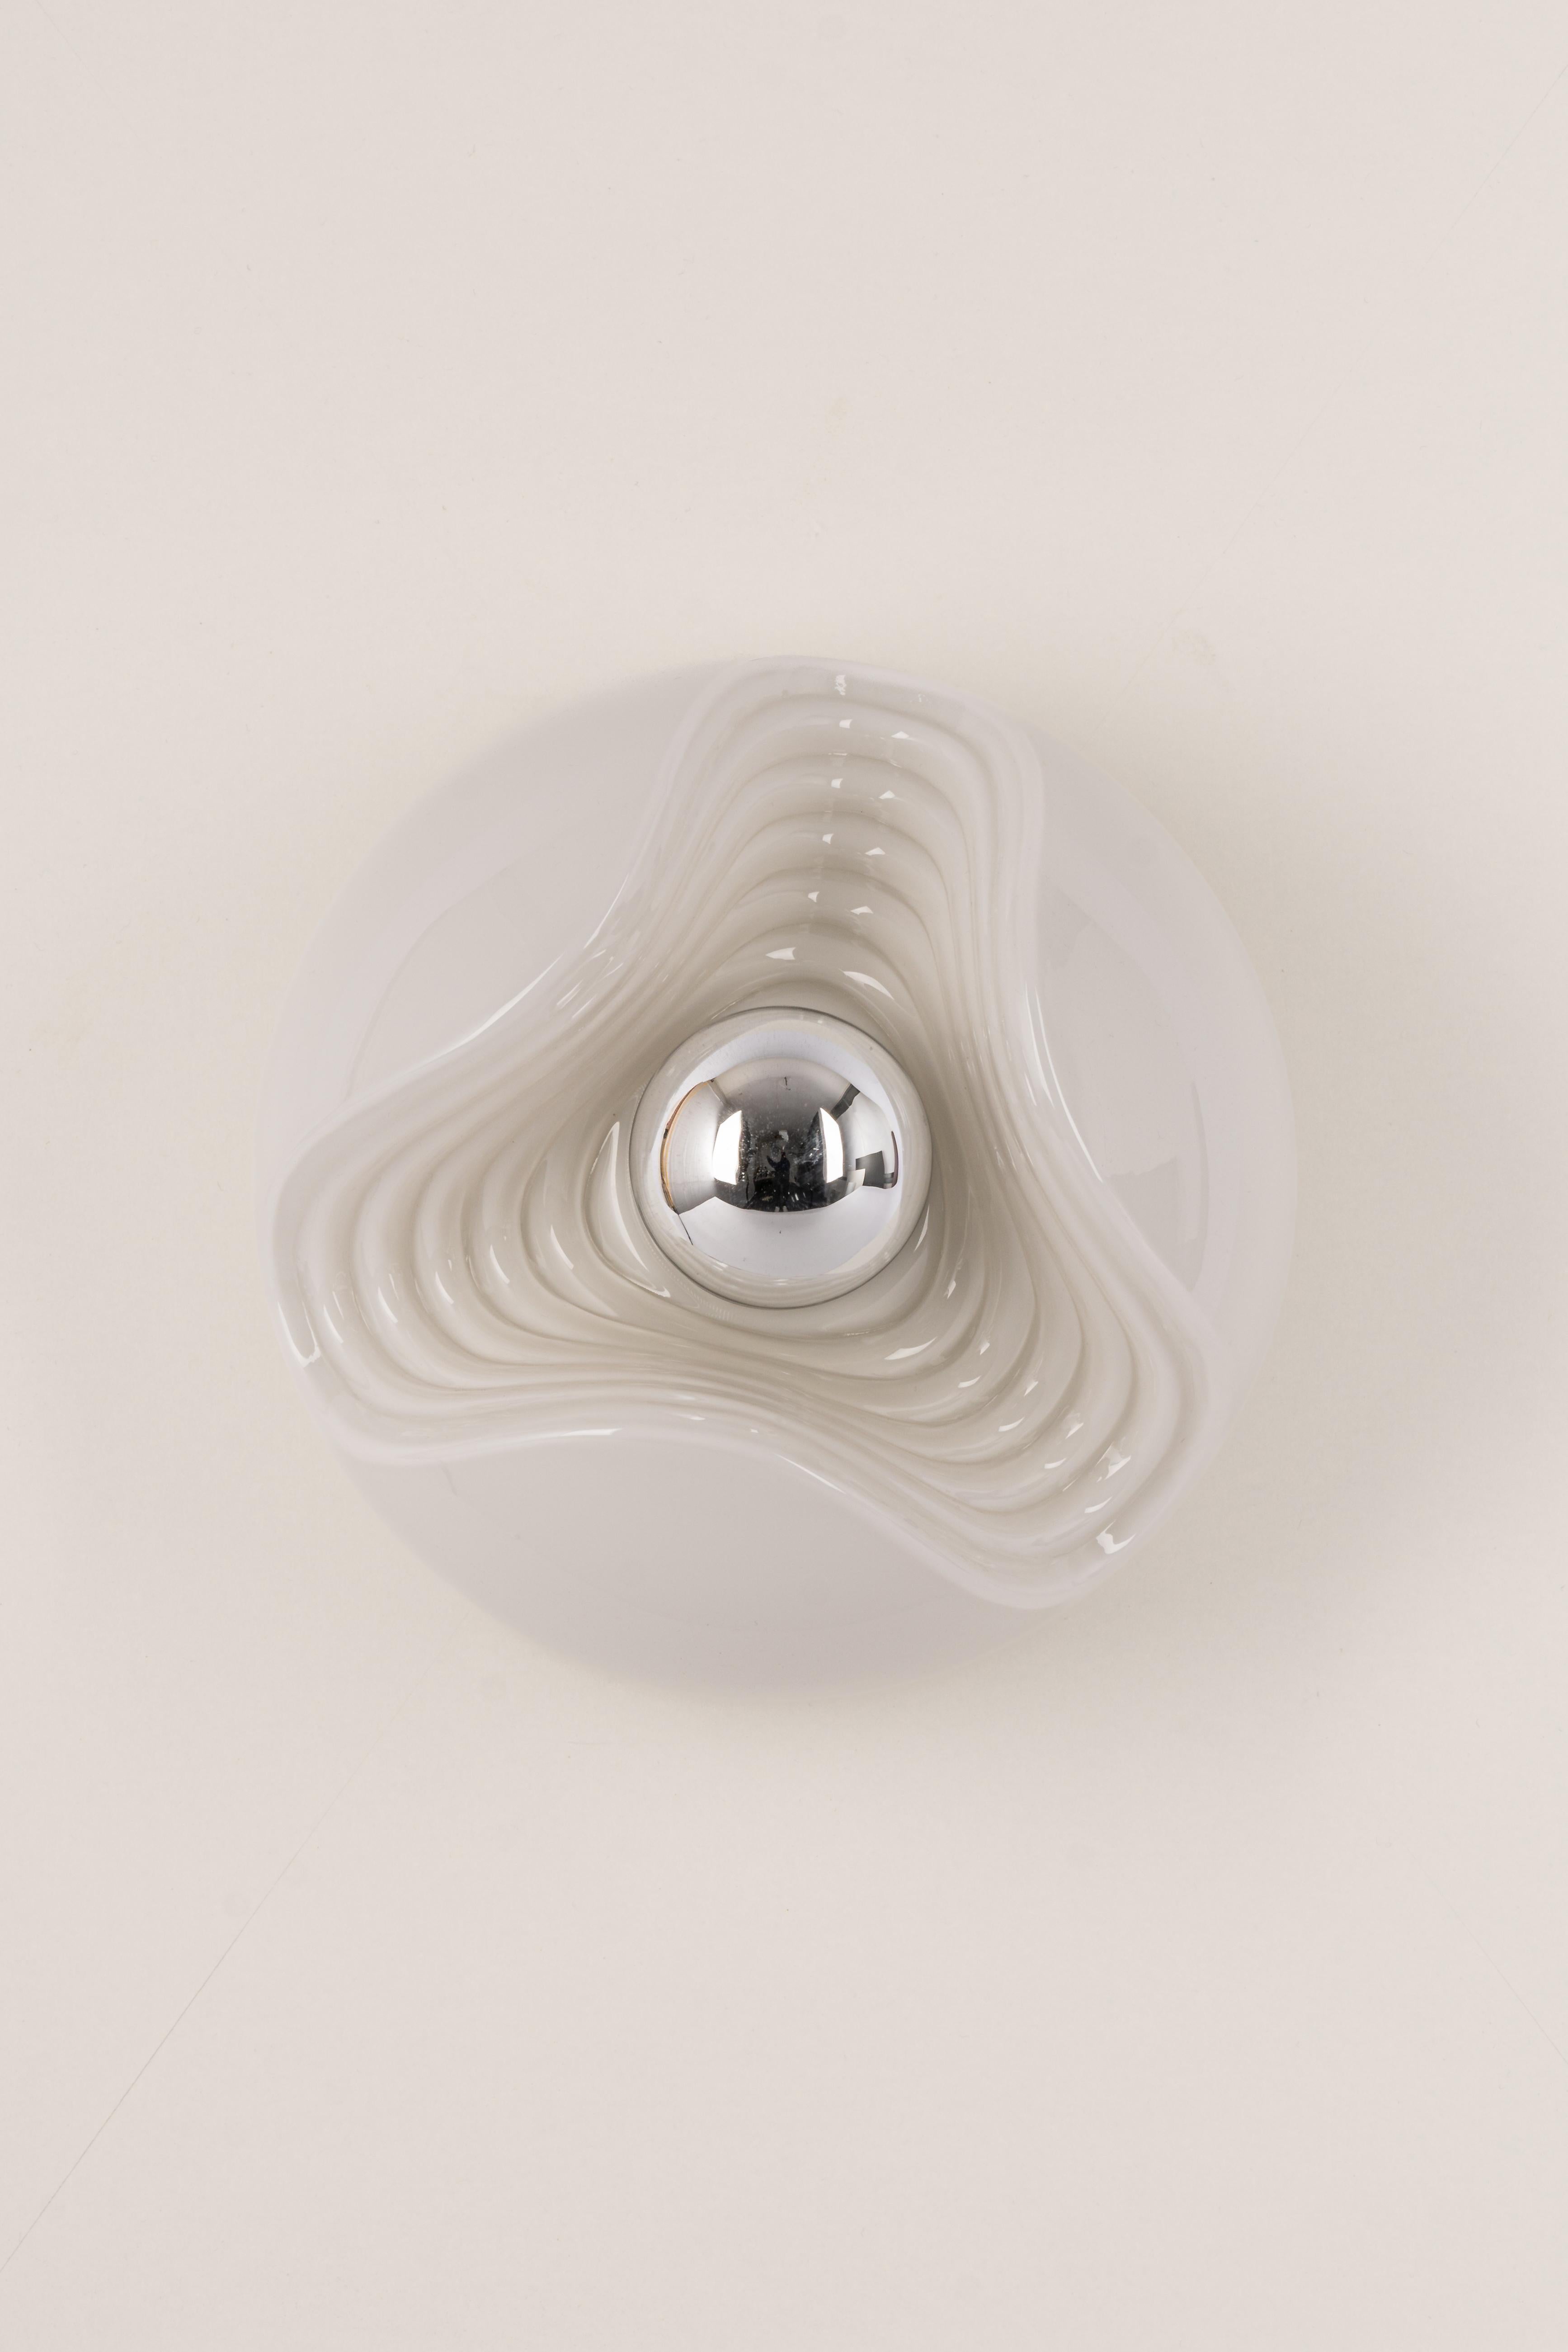 Une applique murale ronde spéciale en verre opale biomorphique / ou un montage encastré conçu par Koch & Lowy pour Peill & Putzler, fabriqué en Allemagne, vers les années 1970.

Douilles : Une ampoule standard E27. (100 W max).-
Les ampoules ne